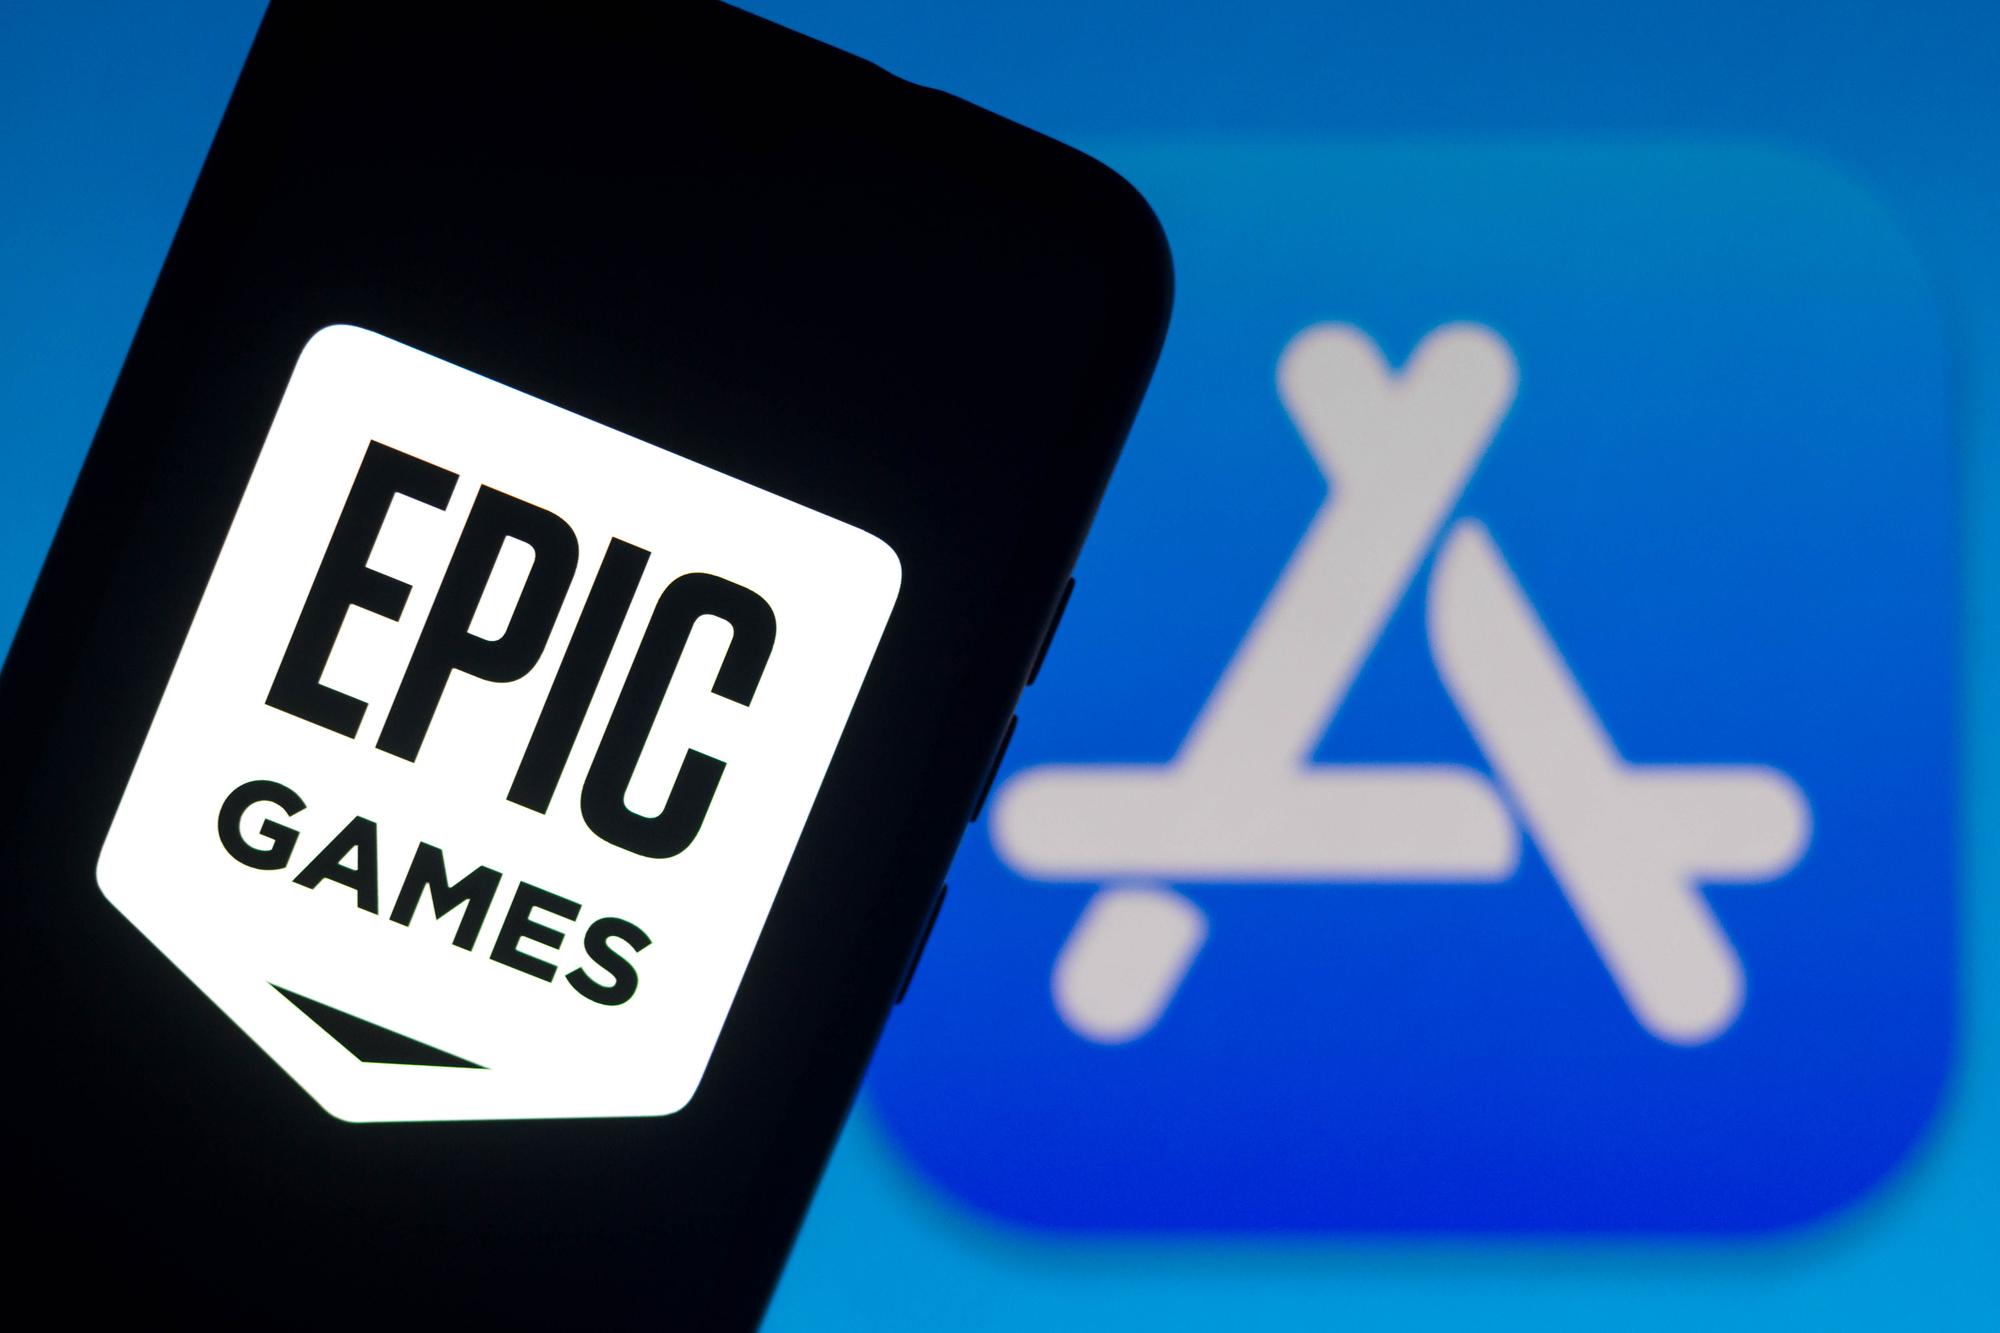 Smartphone mit Epic Games Logo und Apple App-Store Symbol im Hintergrund